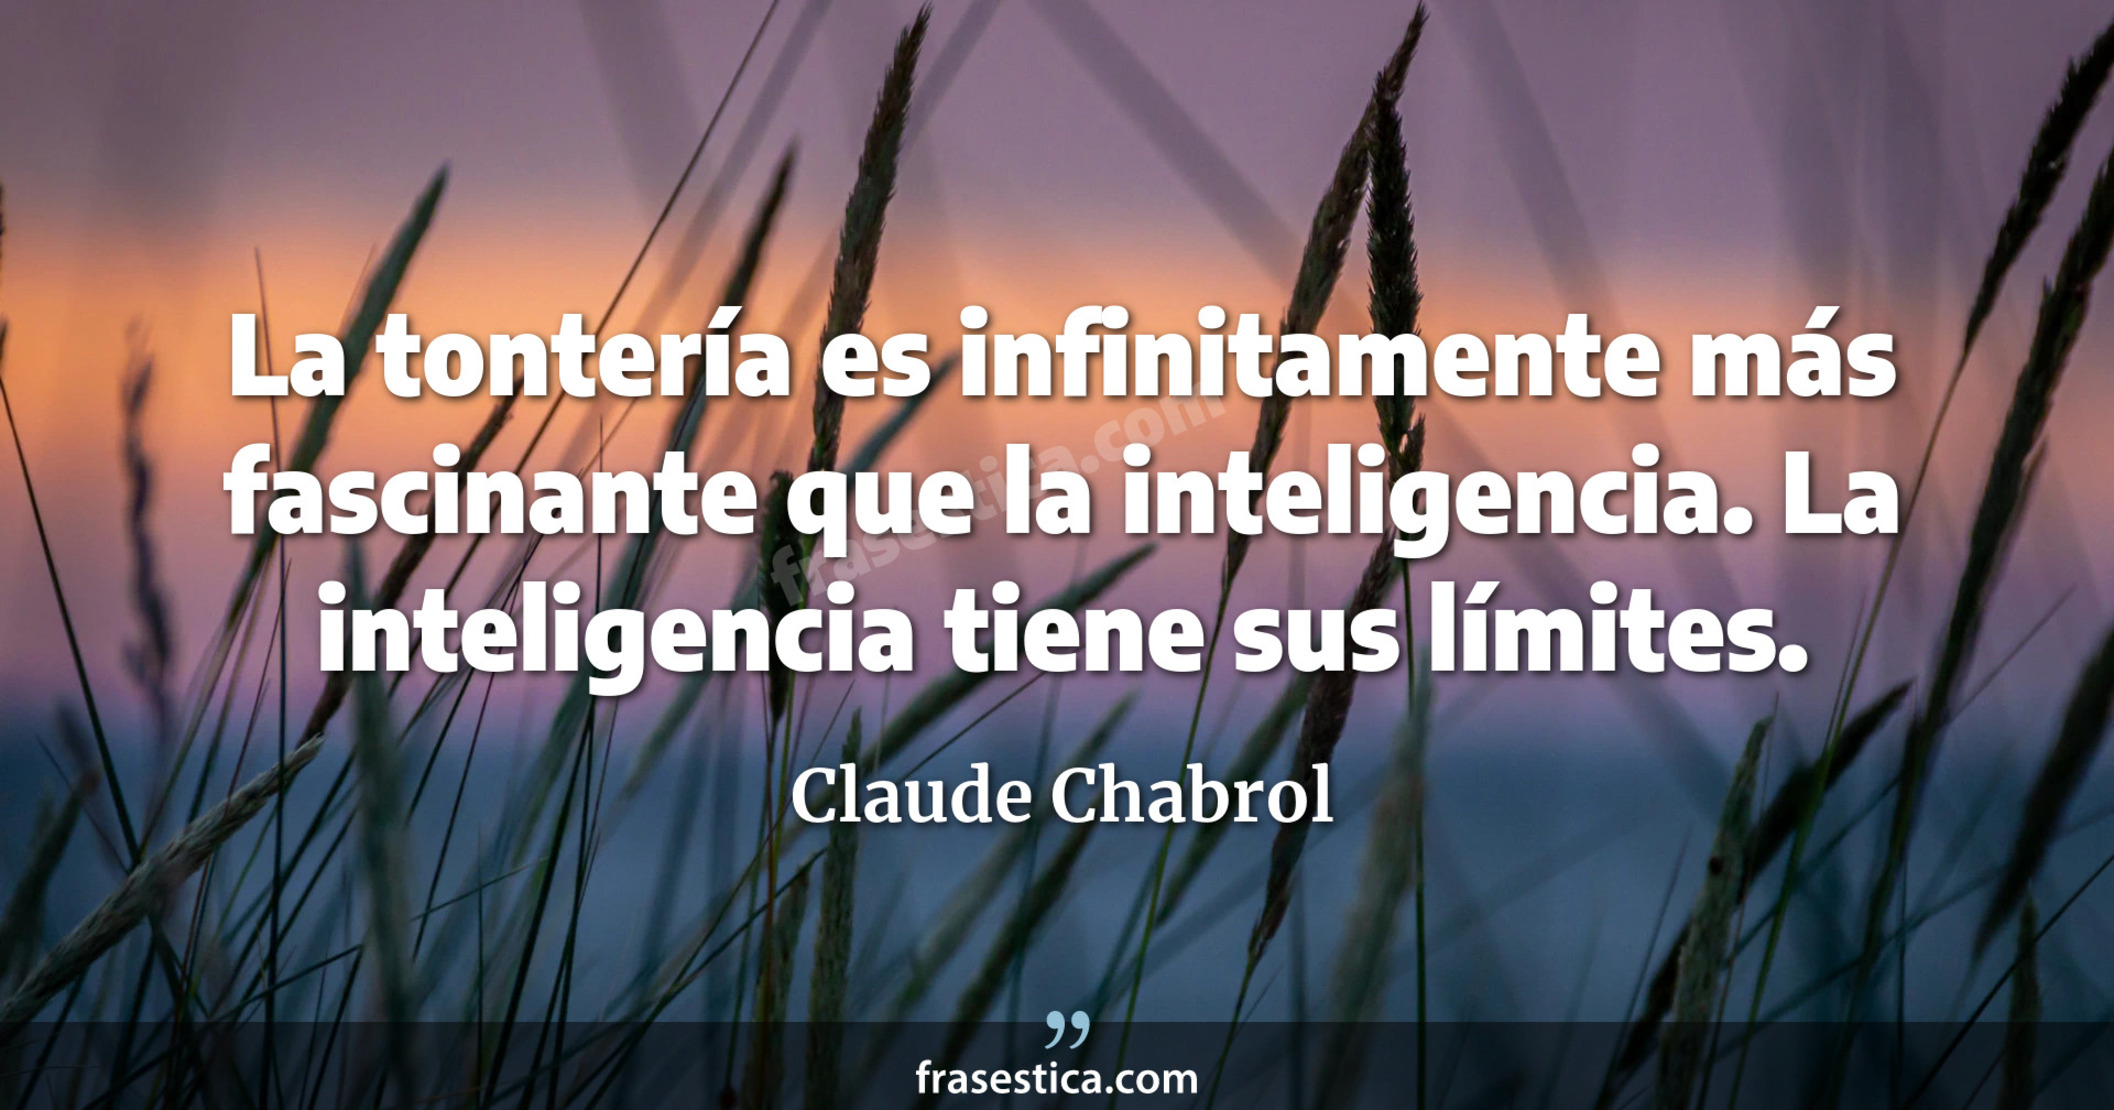 La tontería es infinitamente más fascinante que la inteligencia. La inteligencia tiene sus límites. - Claude Chabrol